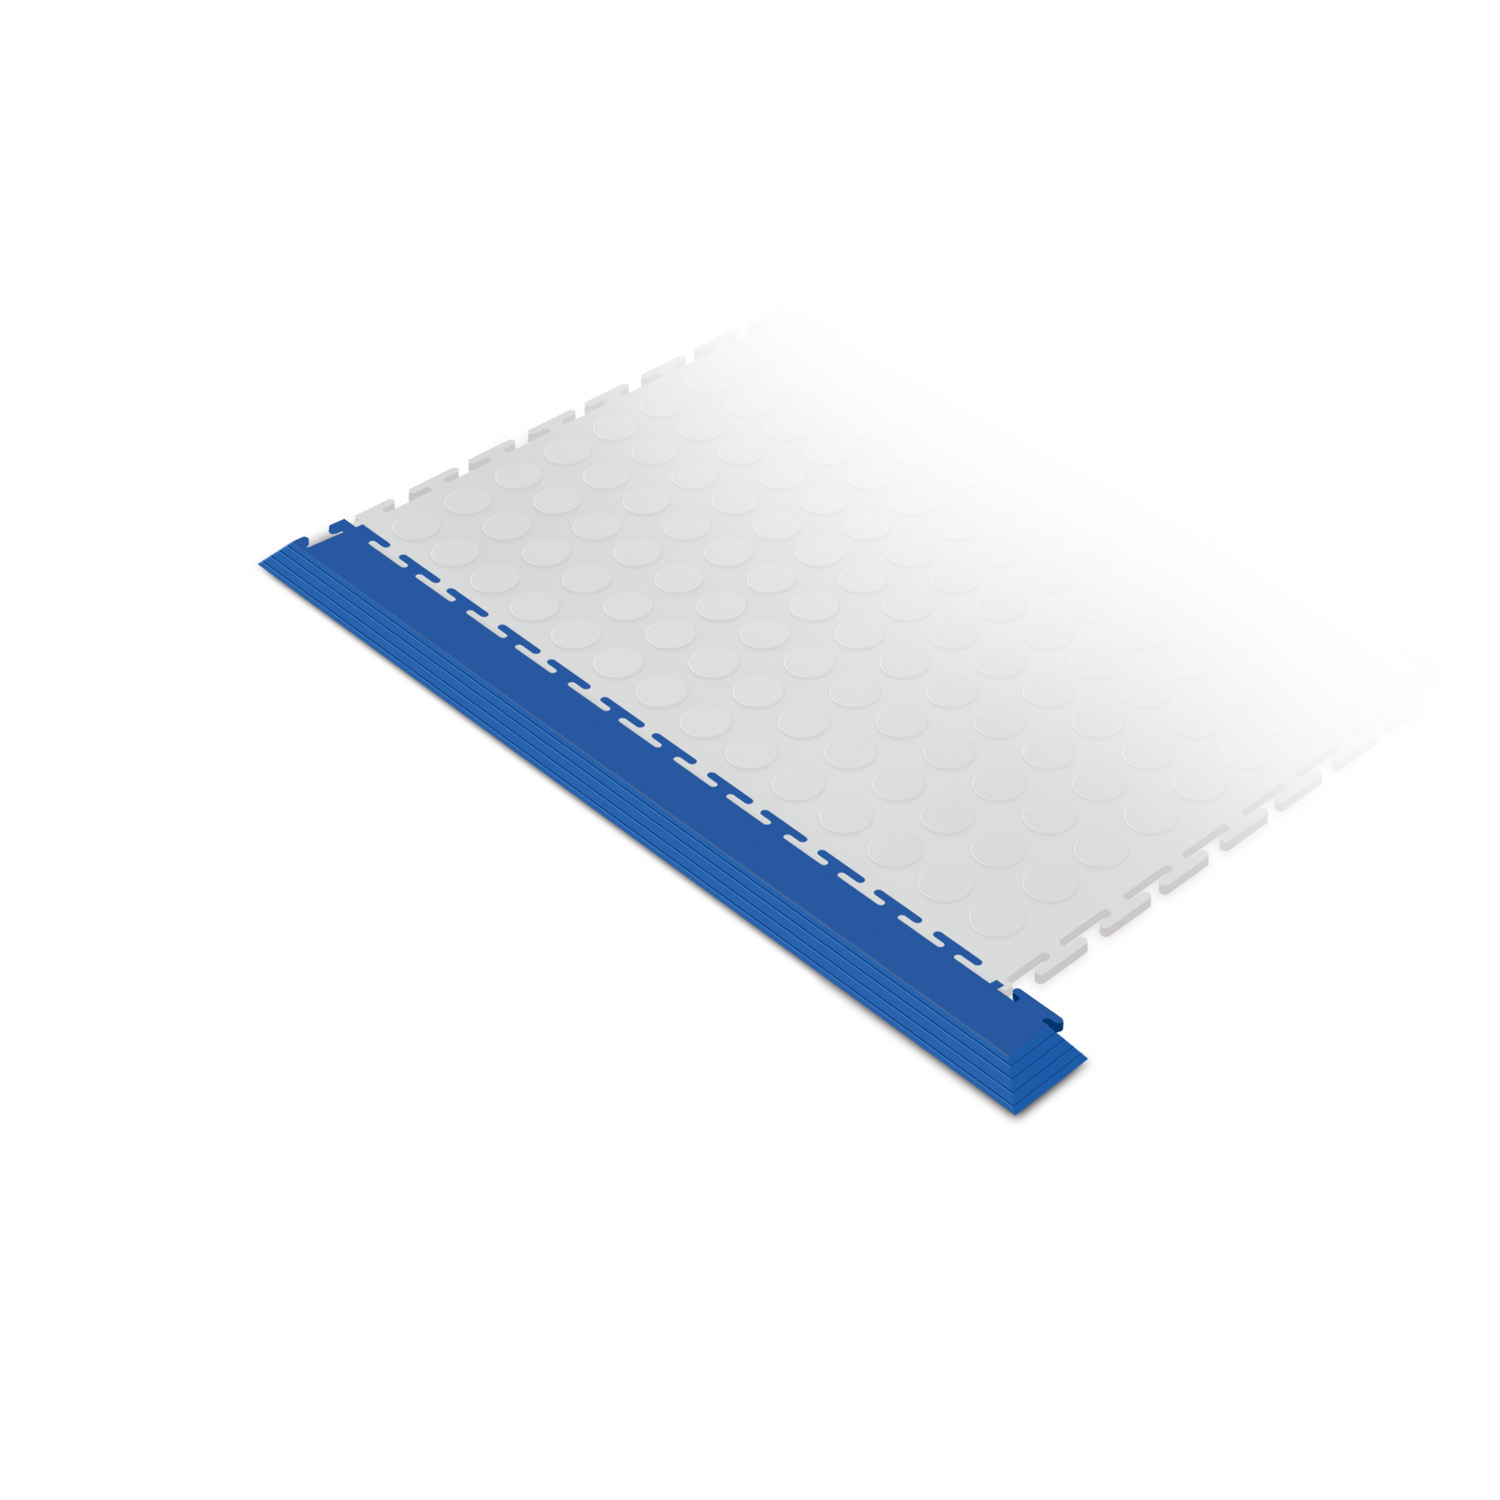 Heavy-duty corner edge ramp tile (blue)